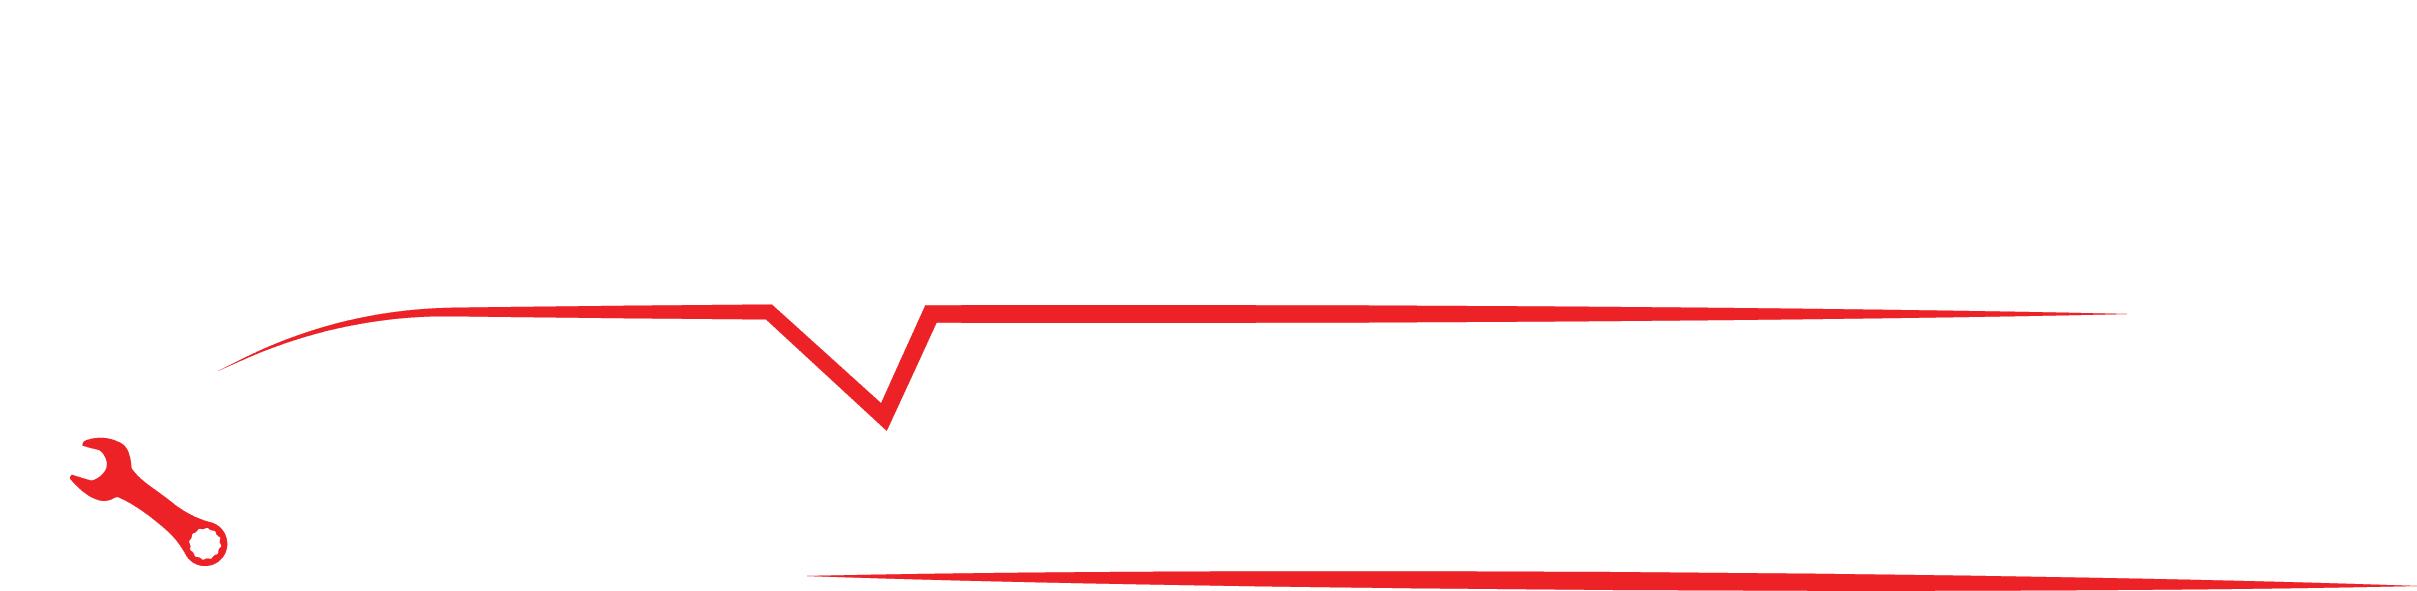 Quick Auto Parts